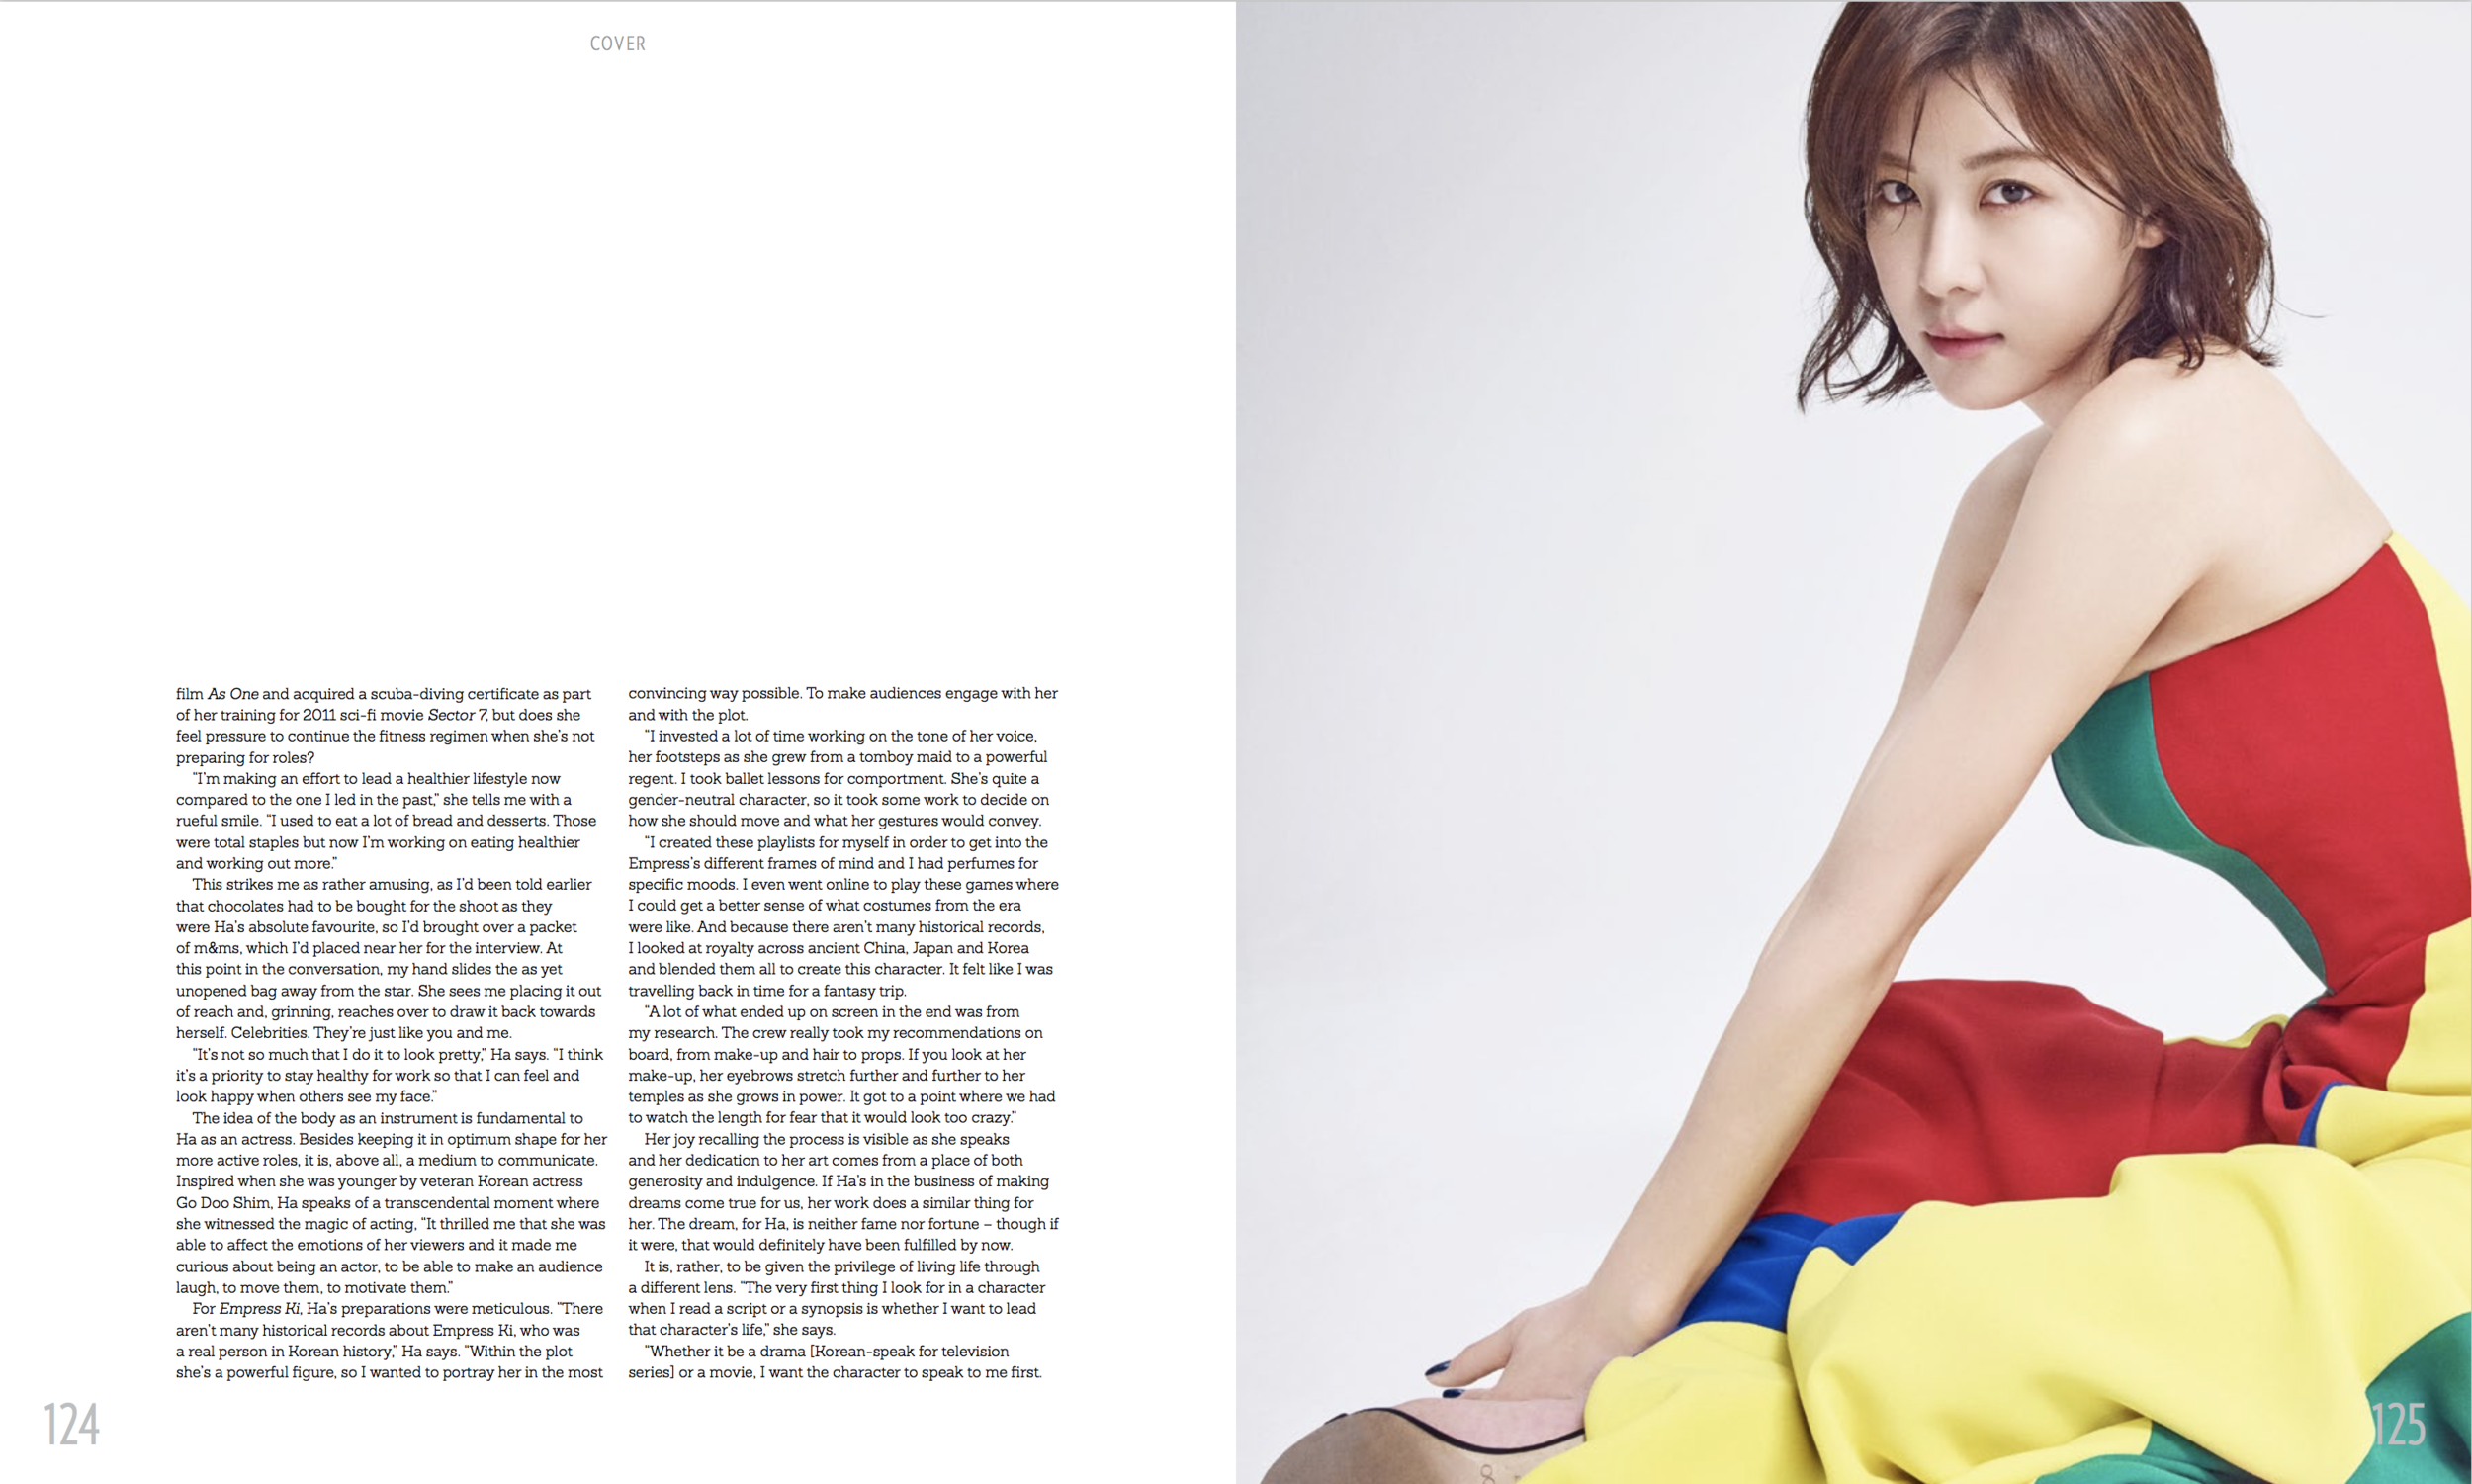 Ha Ji Won Prestige April Cover Story Zaneta Cheng 3:4.png